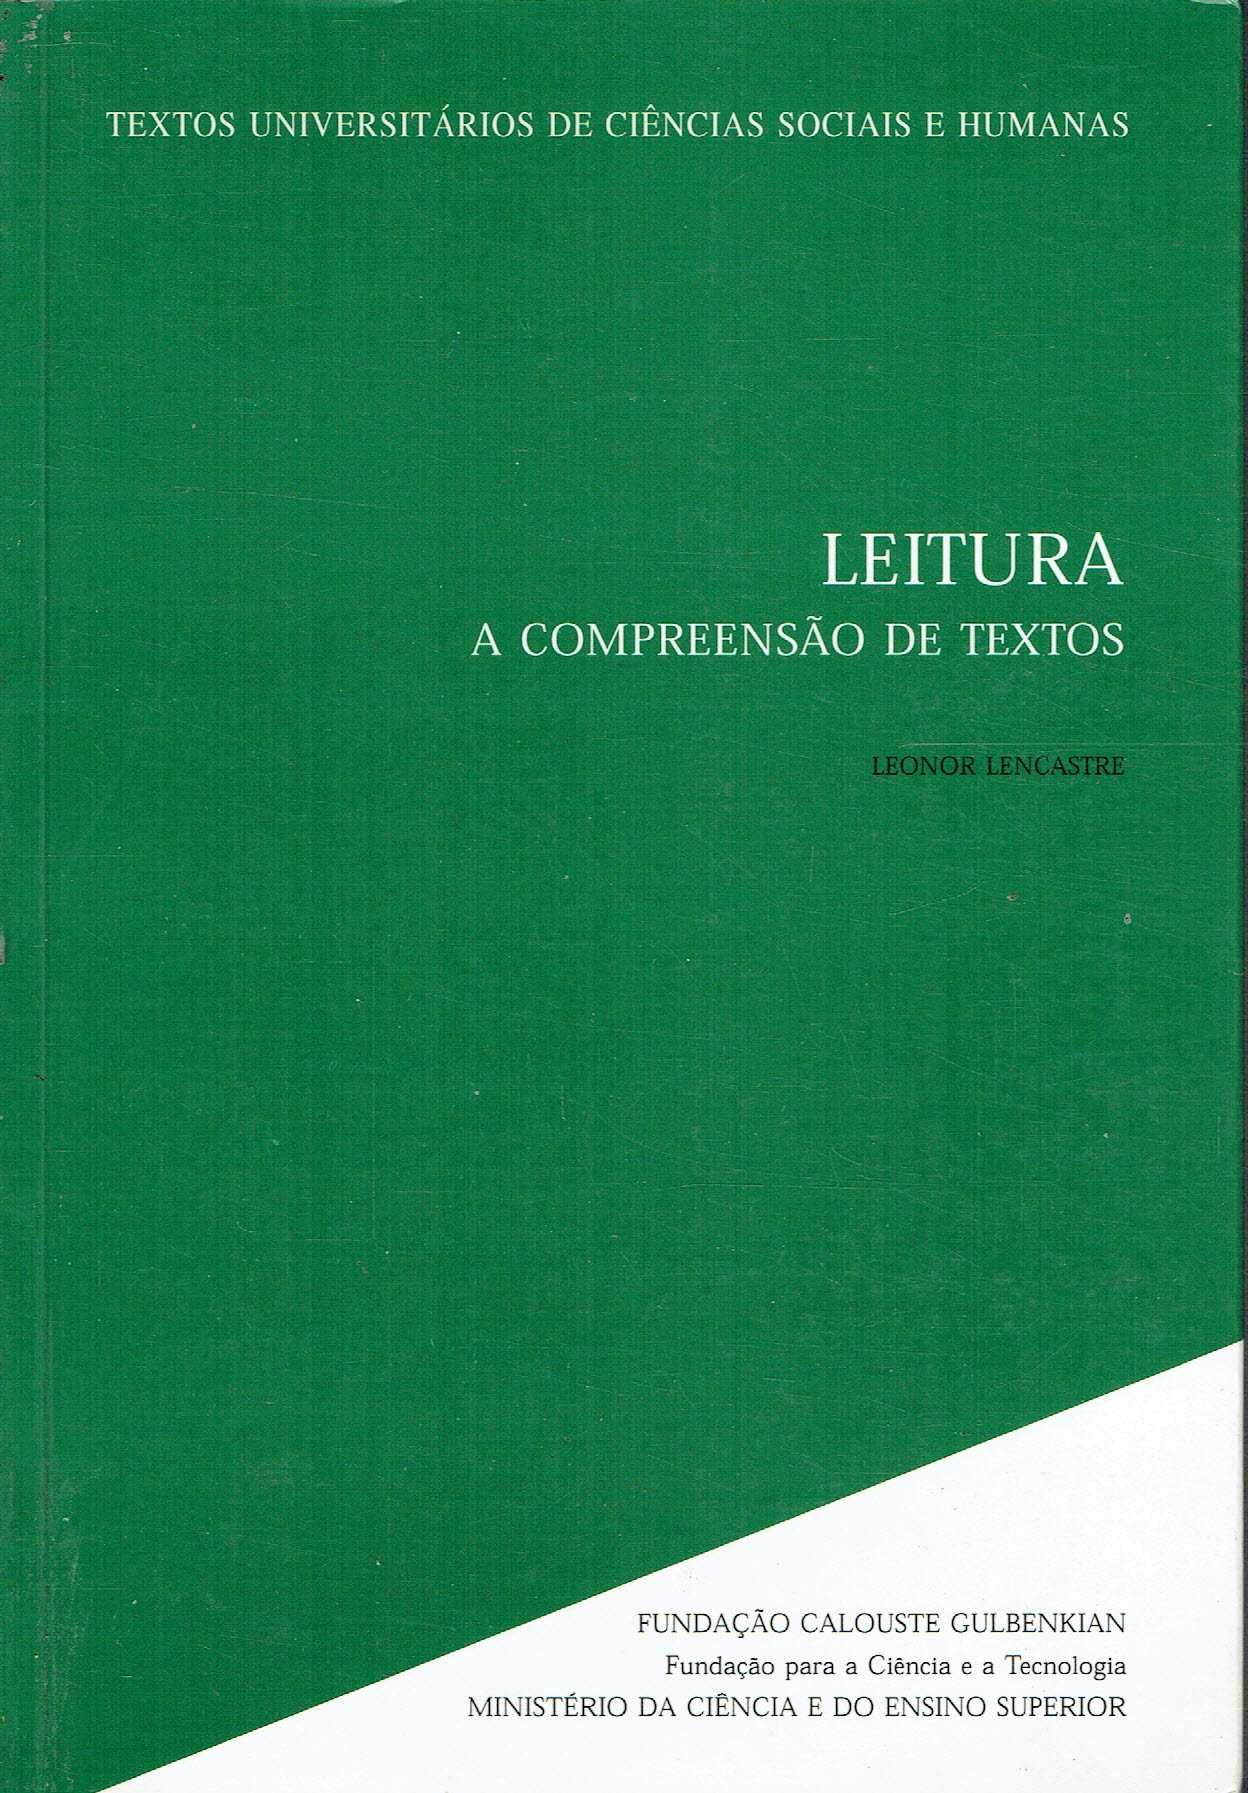 15053

Leitura : a compreensão de textos  
de Leonor Lencastre